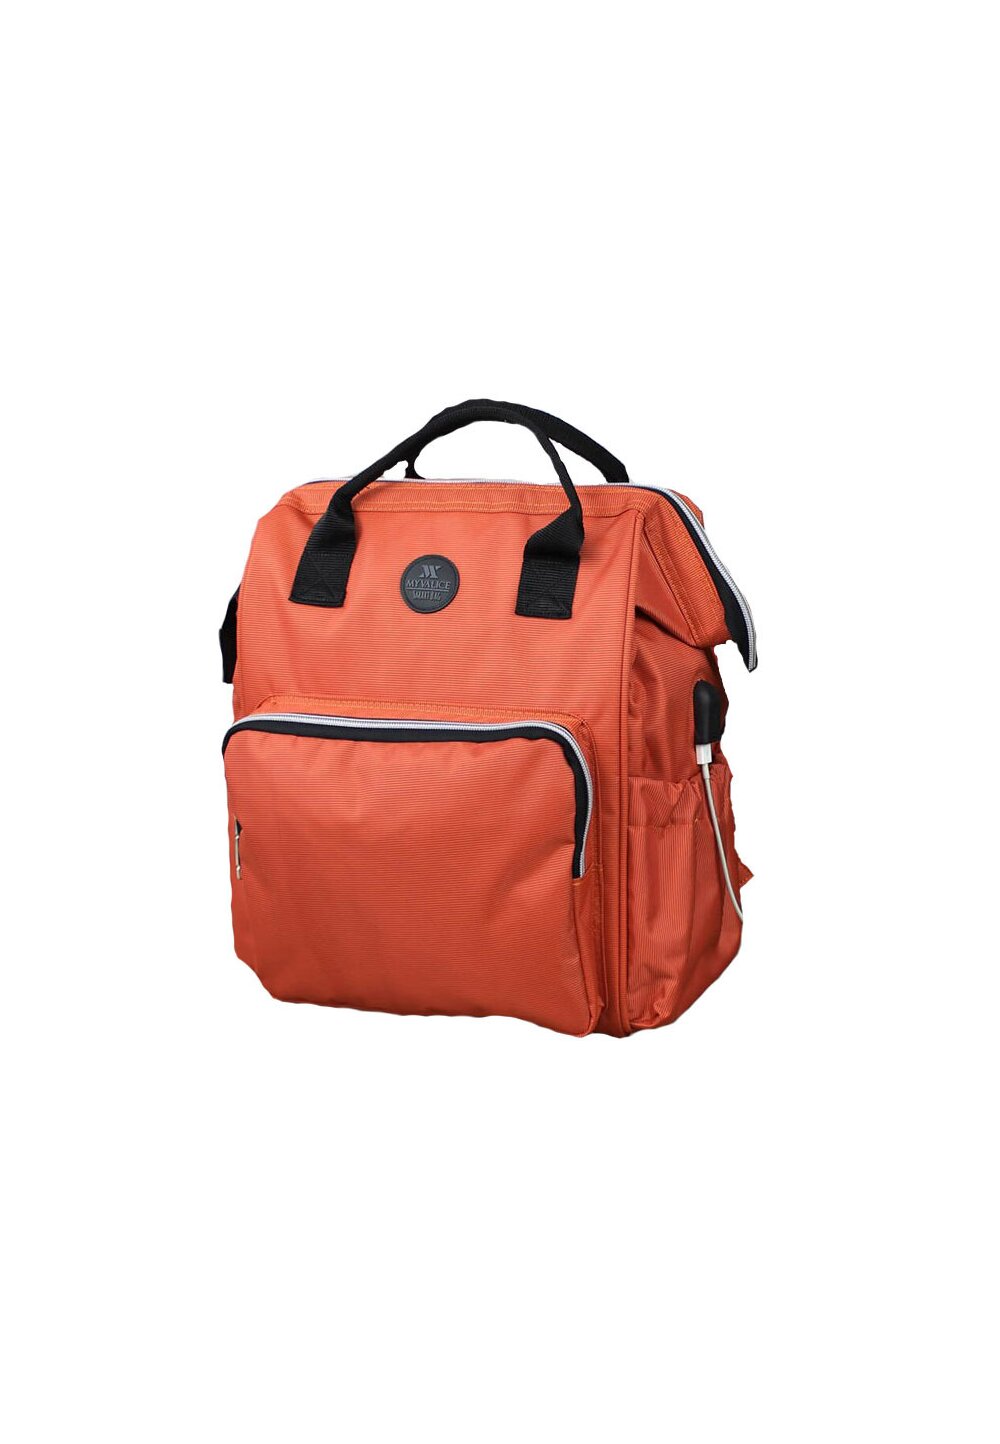 Rucsac pentru mamici, cu mufa USB, Smart Bag, portocaliu Prichindel